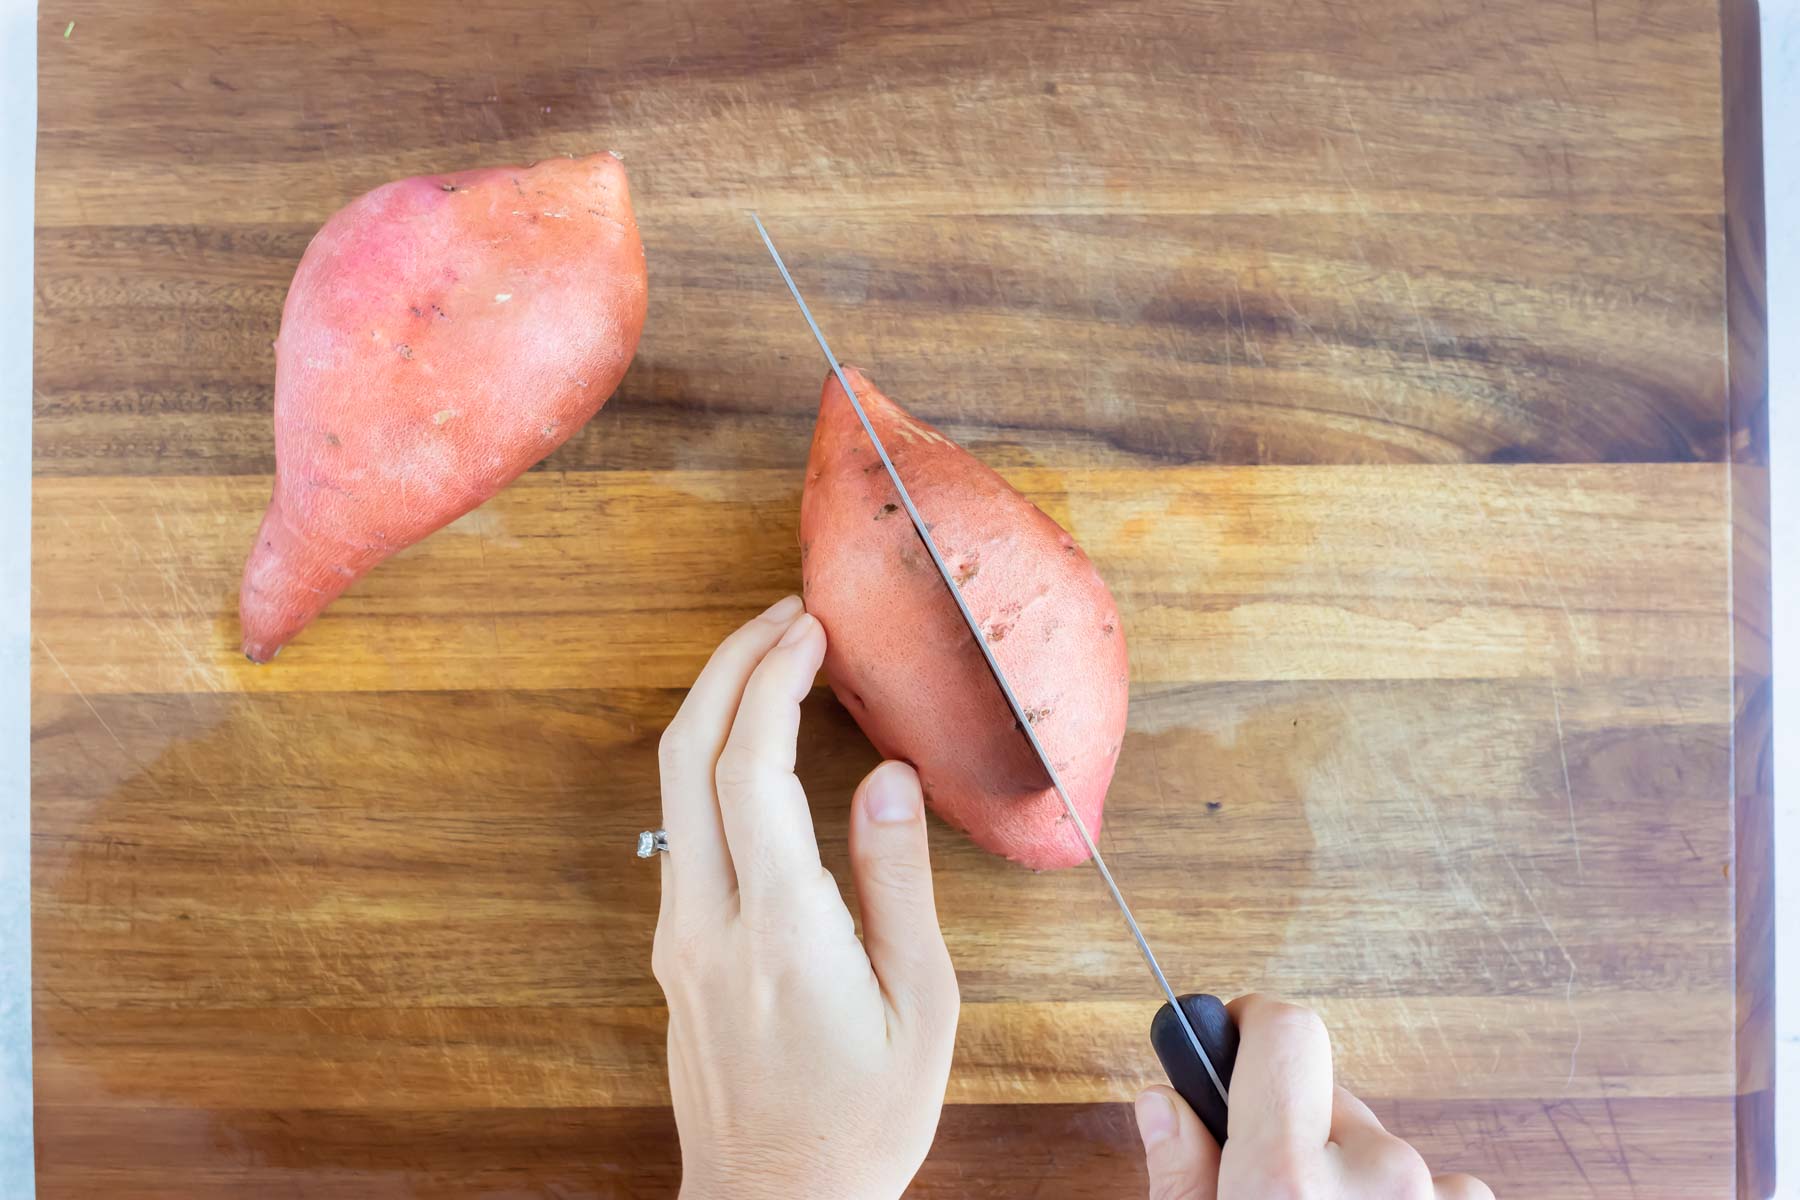 A raw sweet potato is cut in half.